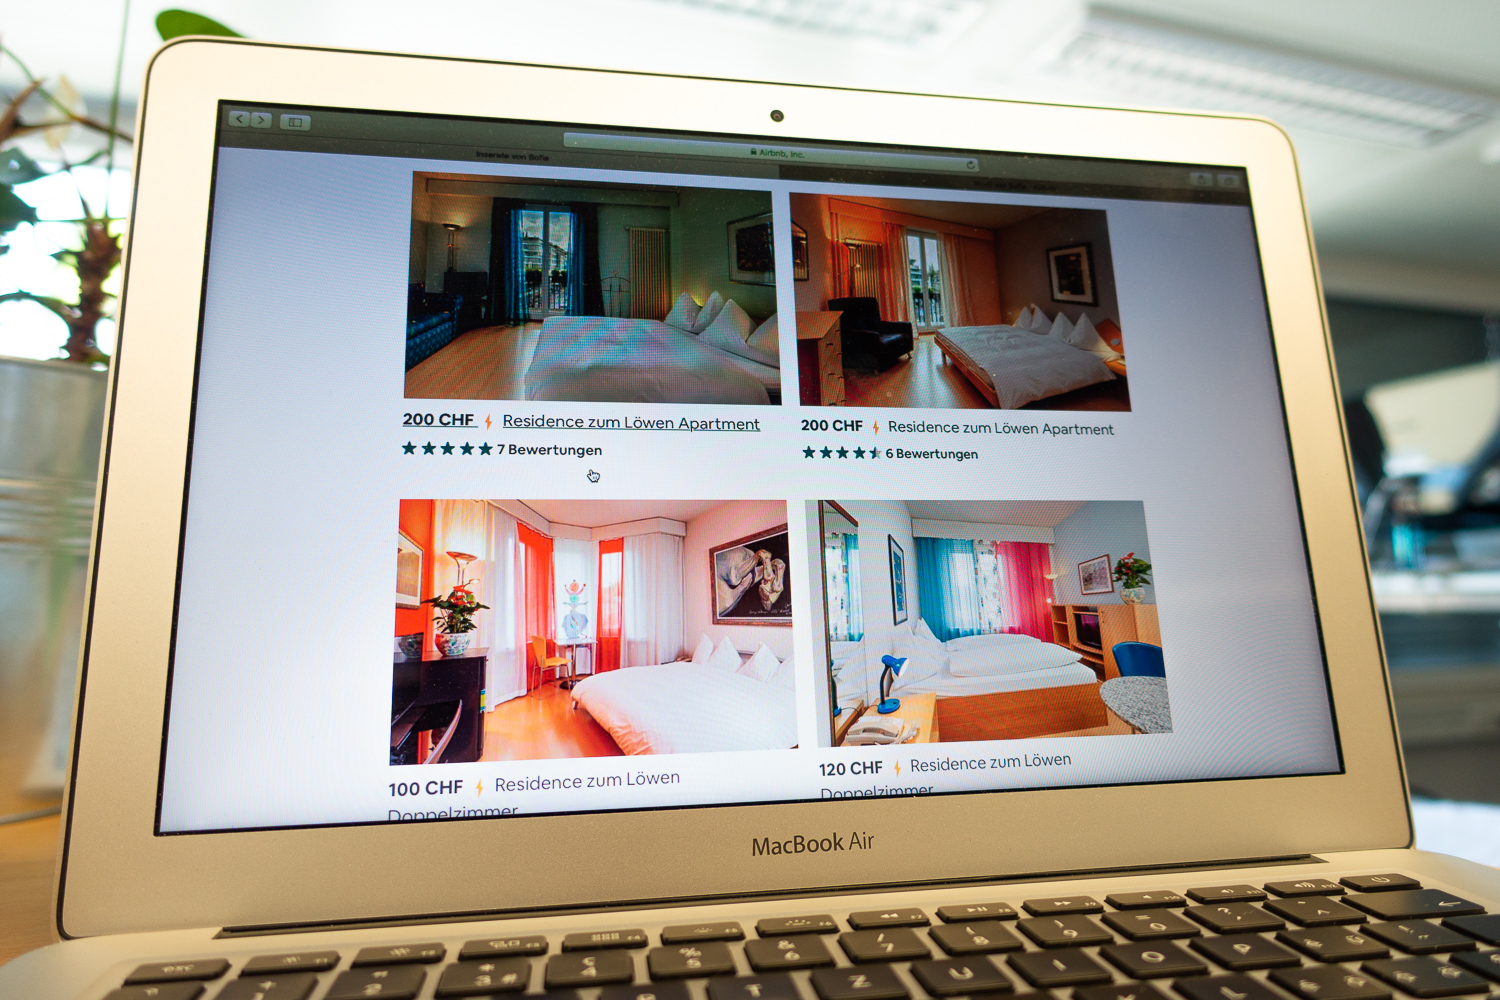 Sogar das Hotel Luzernerhof vermietet auf Airbnb Apartments.